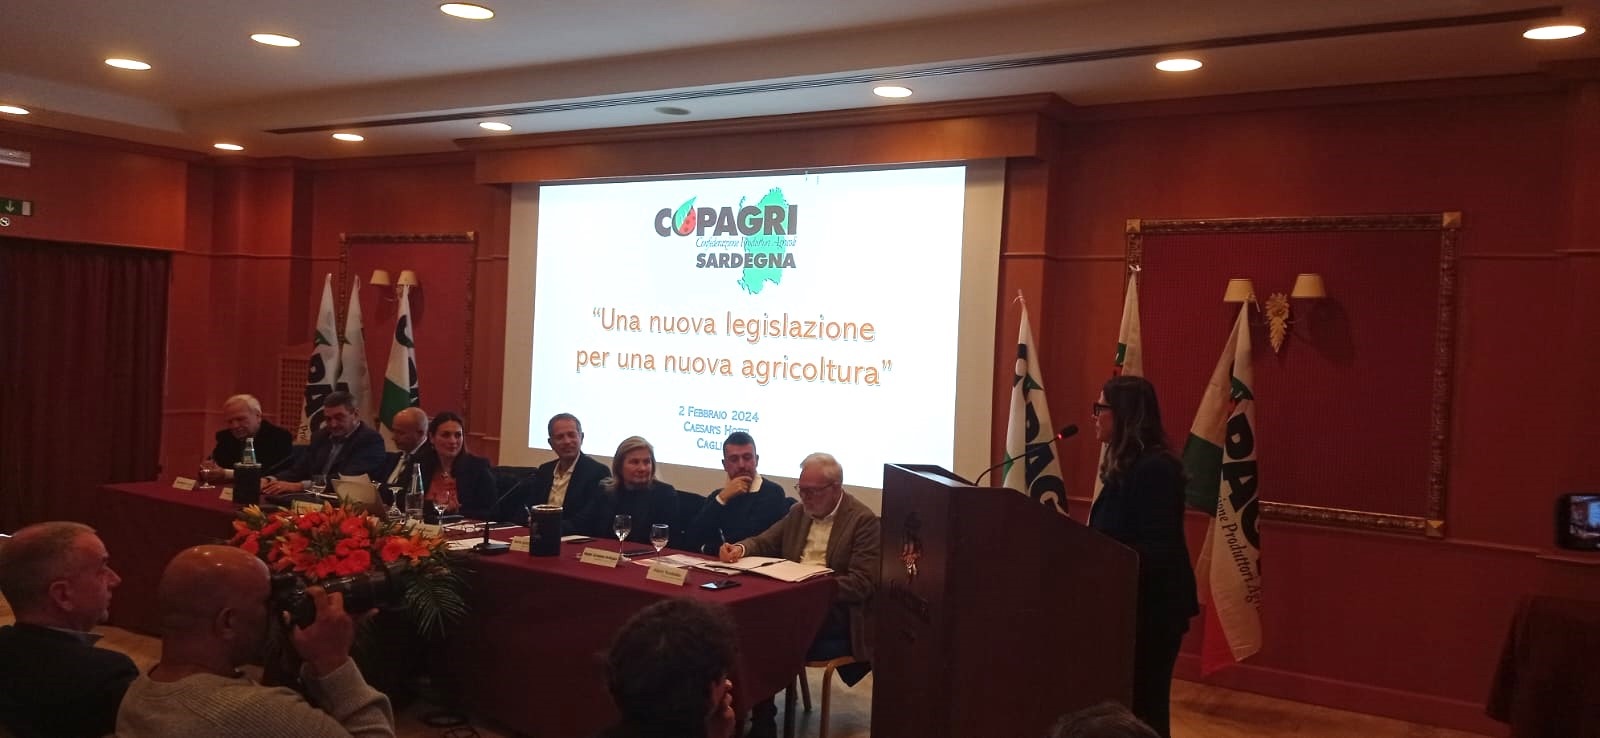 Grande successo per l’incontro con i candidati e le candidate alla presidenza della Regione Sardegna sui temi dell’agricoltura, organizzato da Copagri a Cagliari